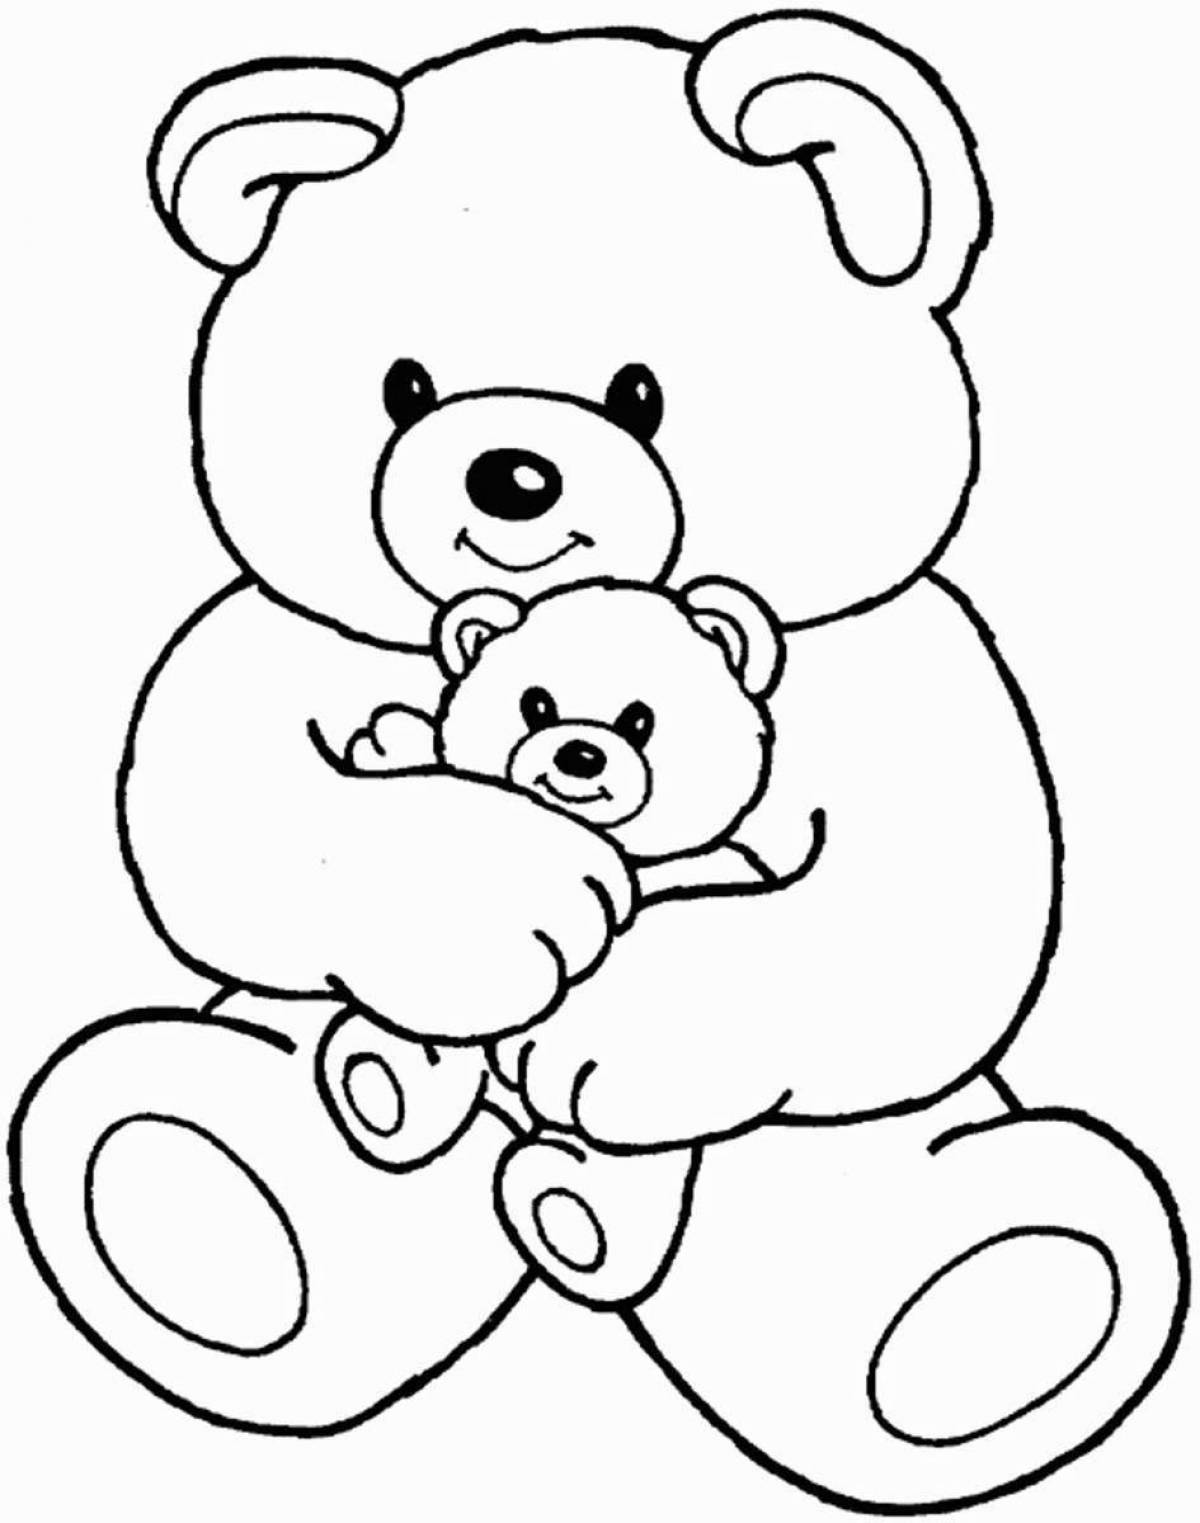 Причудливая раскраска медведя для детей 4-5 лет